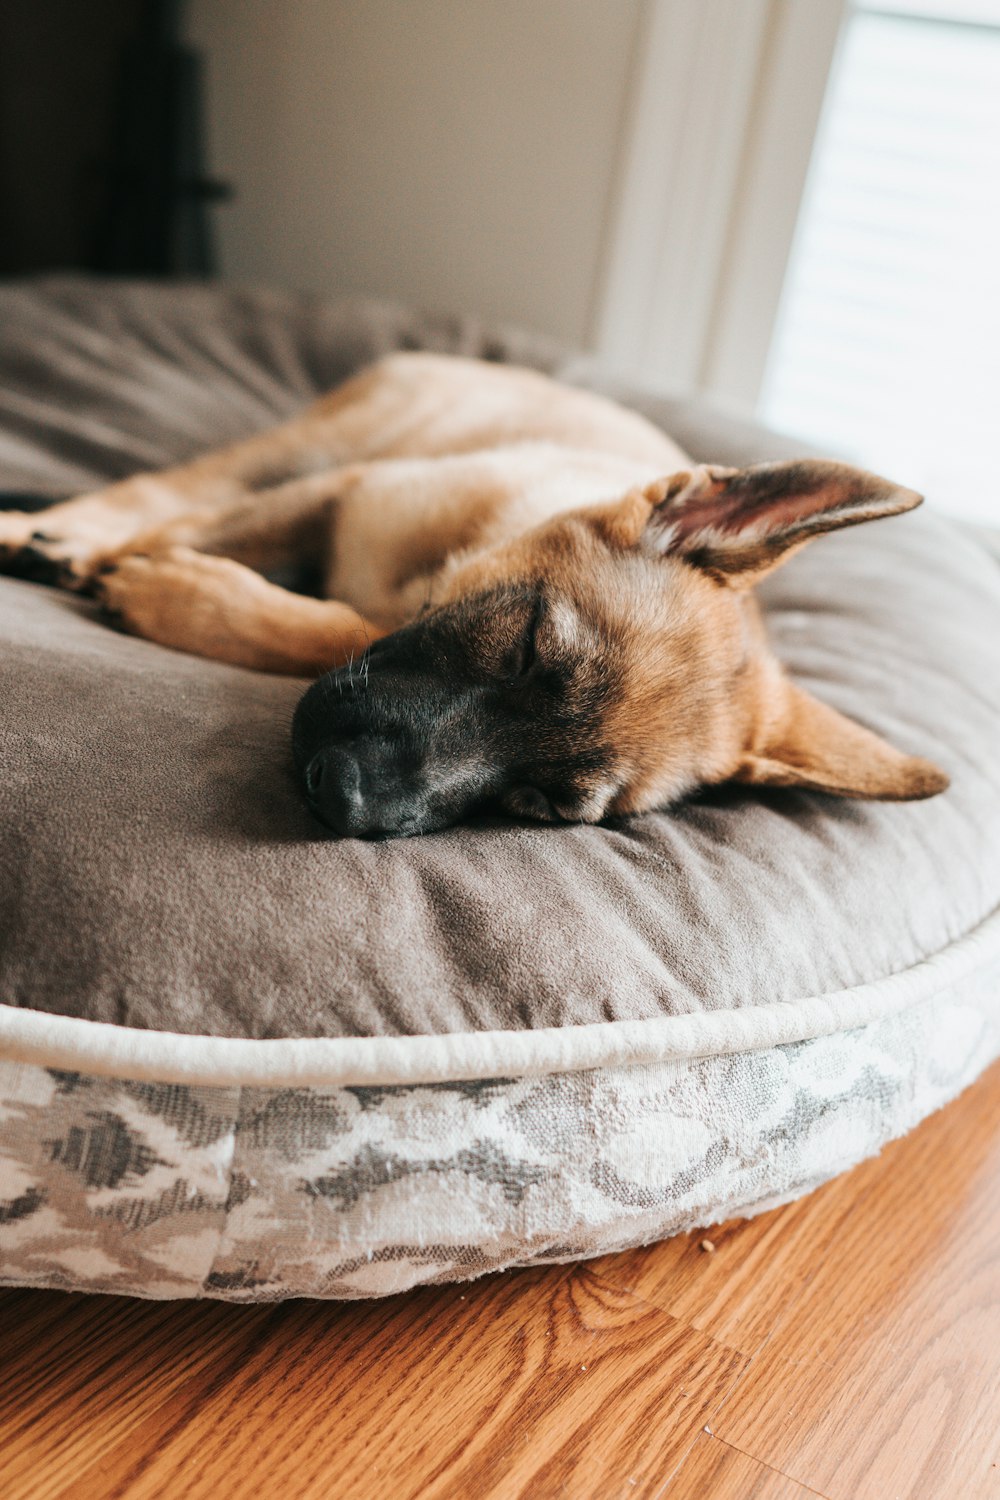 999+ Imágenes de perros durmiendo | Descargar imágenes gratis en Unsplash